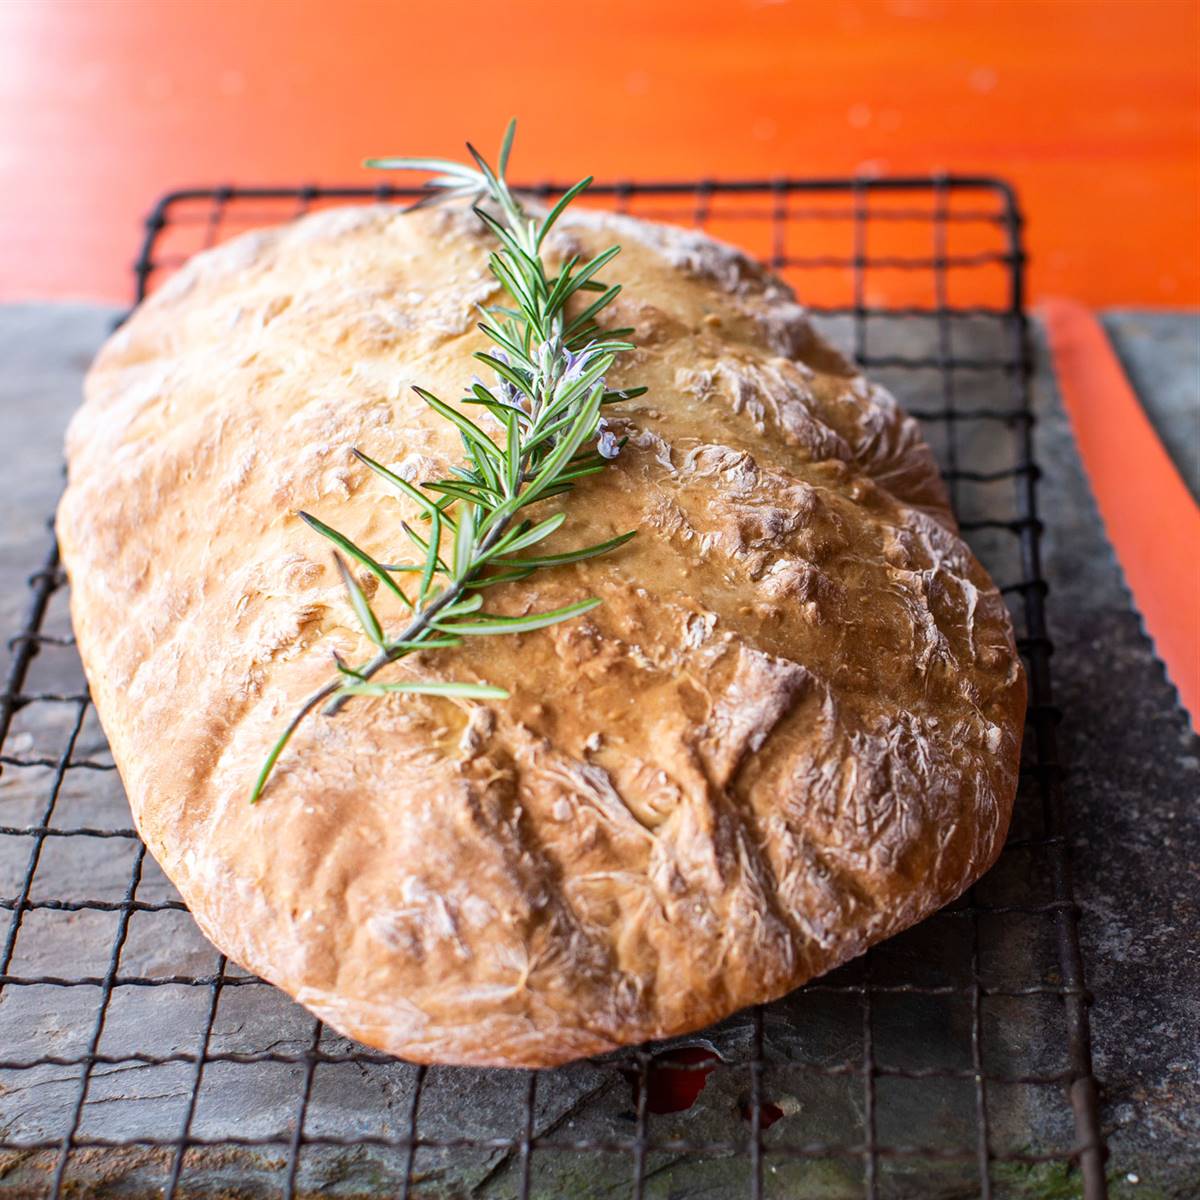 Pan de molde integral. Receta de panadería fácil, sencilla y deliciosa